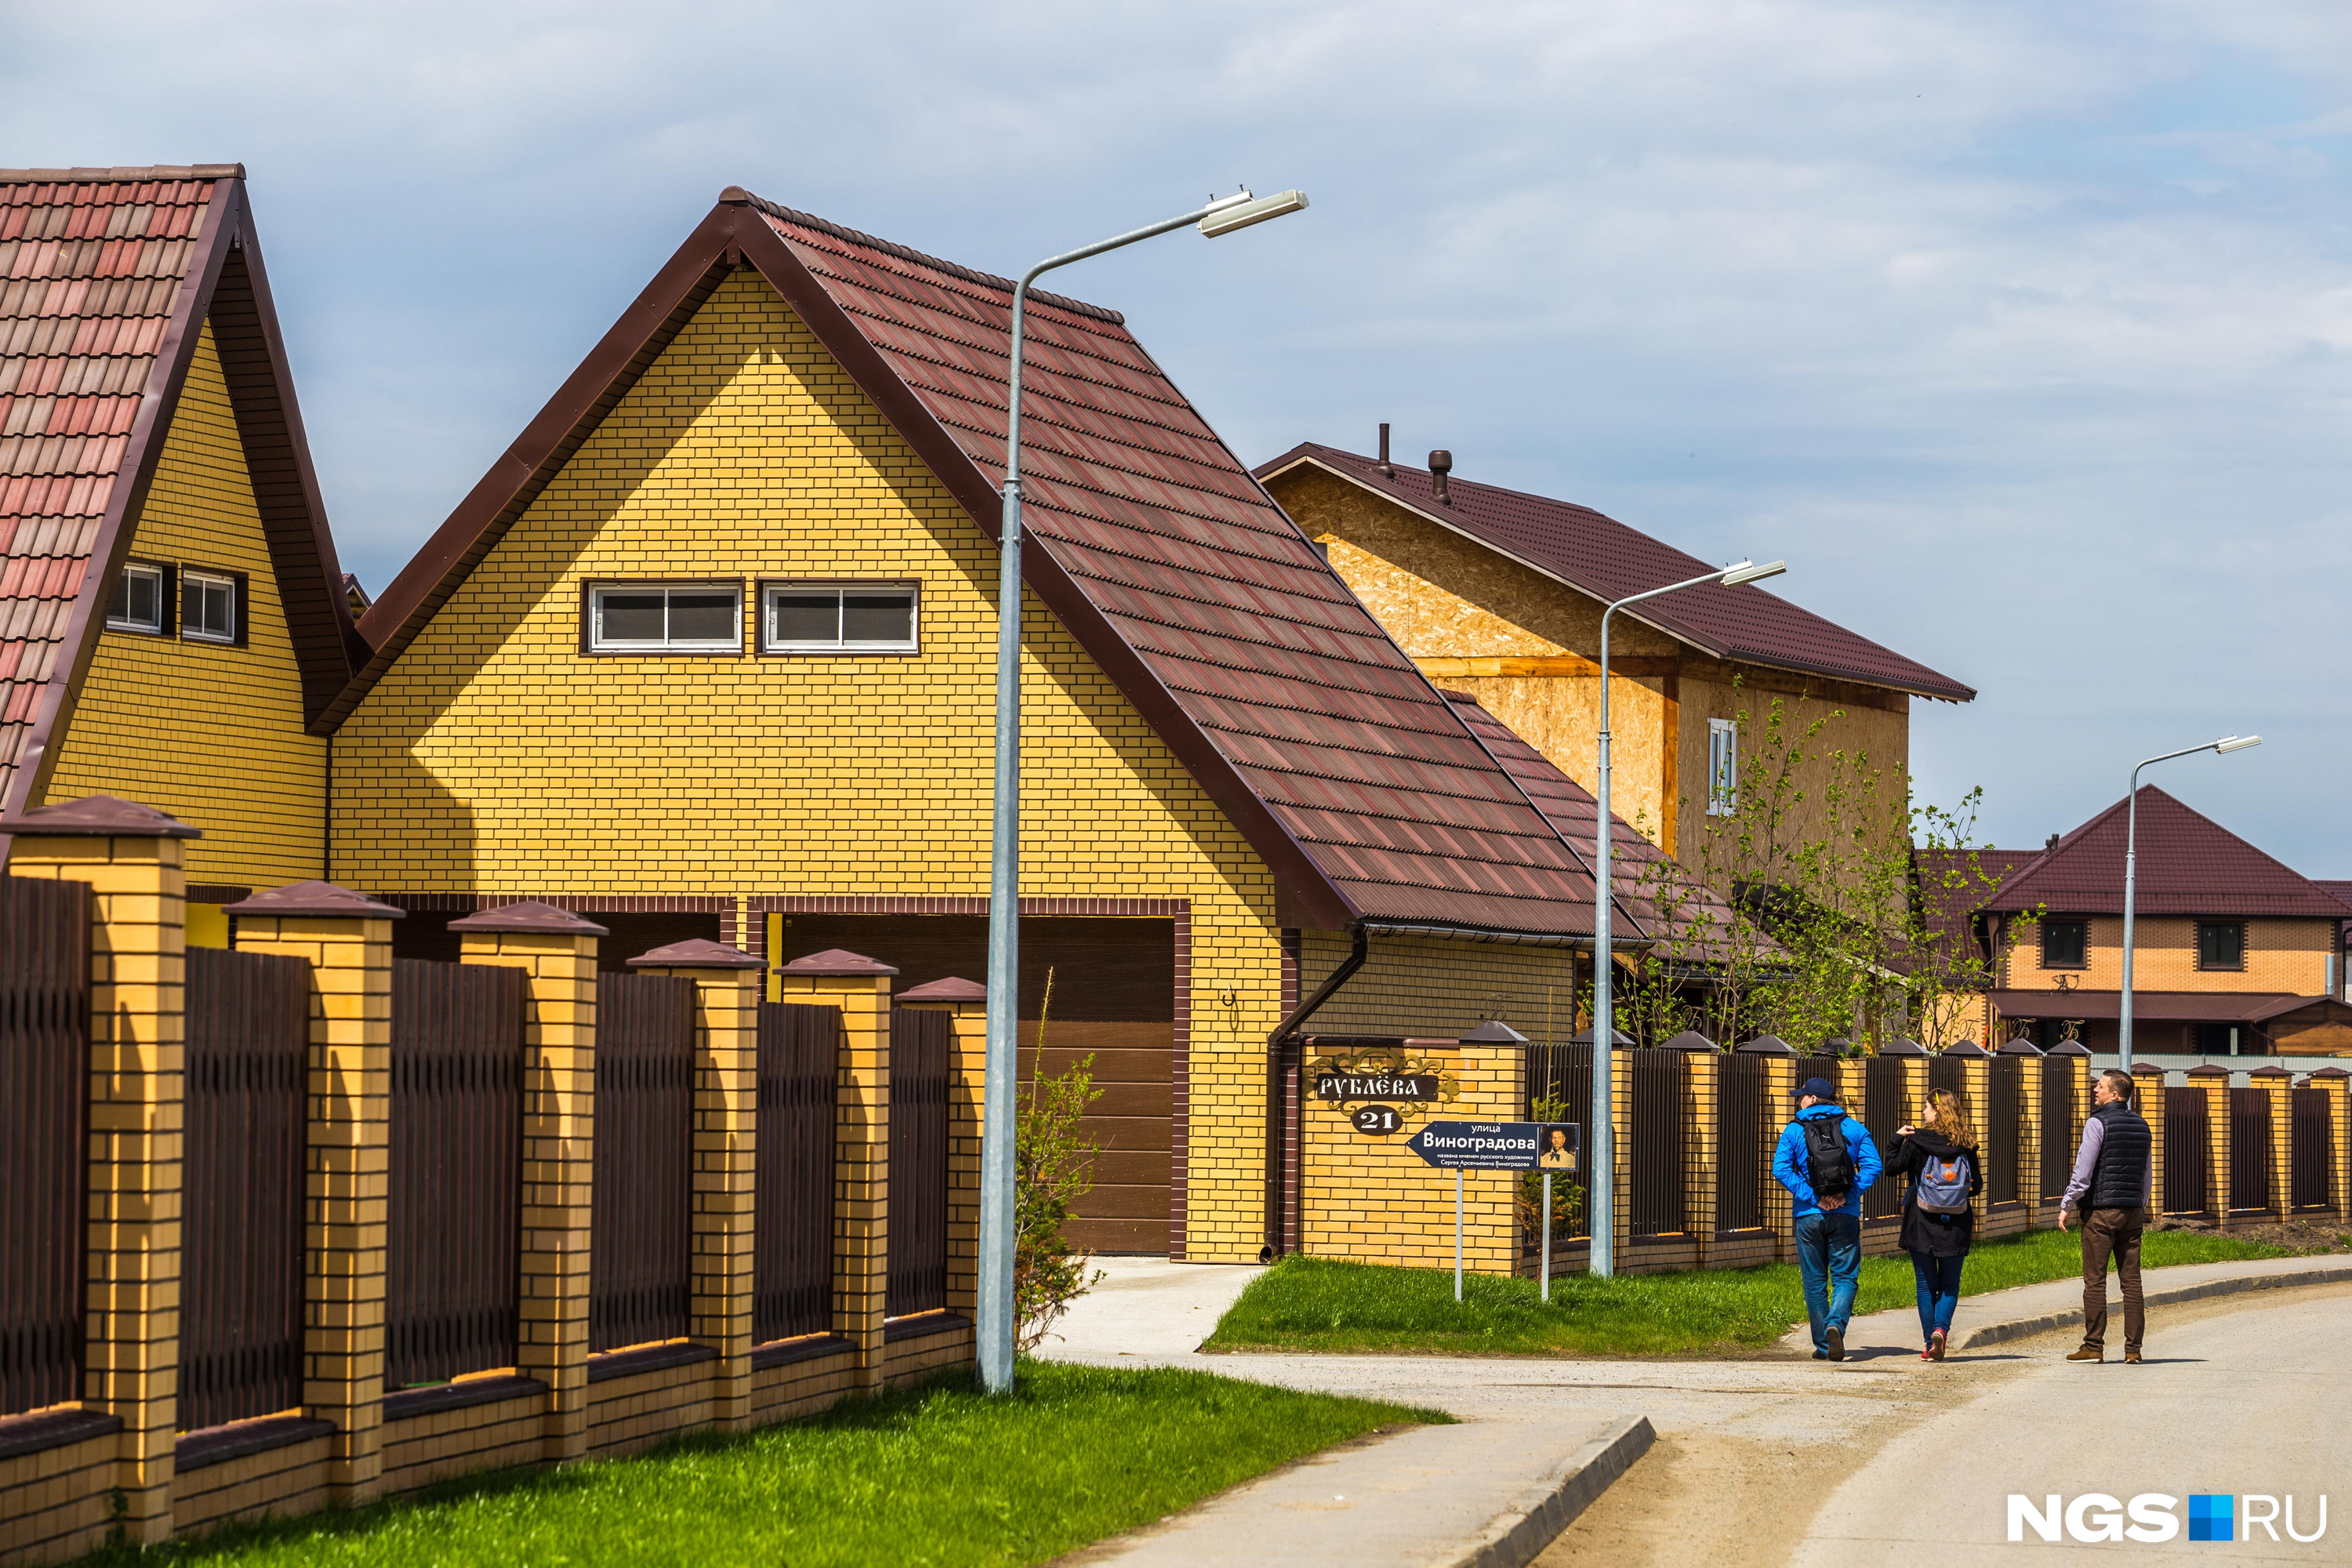 Самые дорогие дома в мире и в России: ТОП-10 частных домов